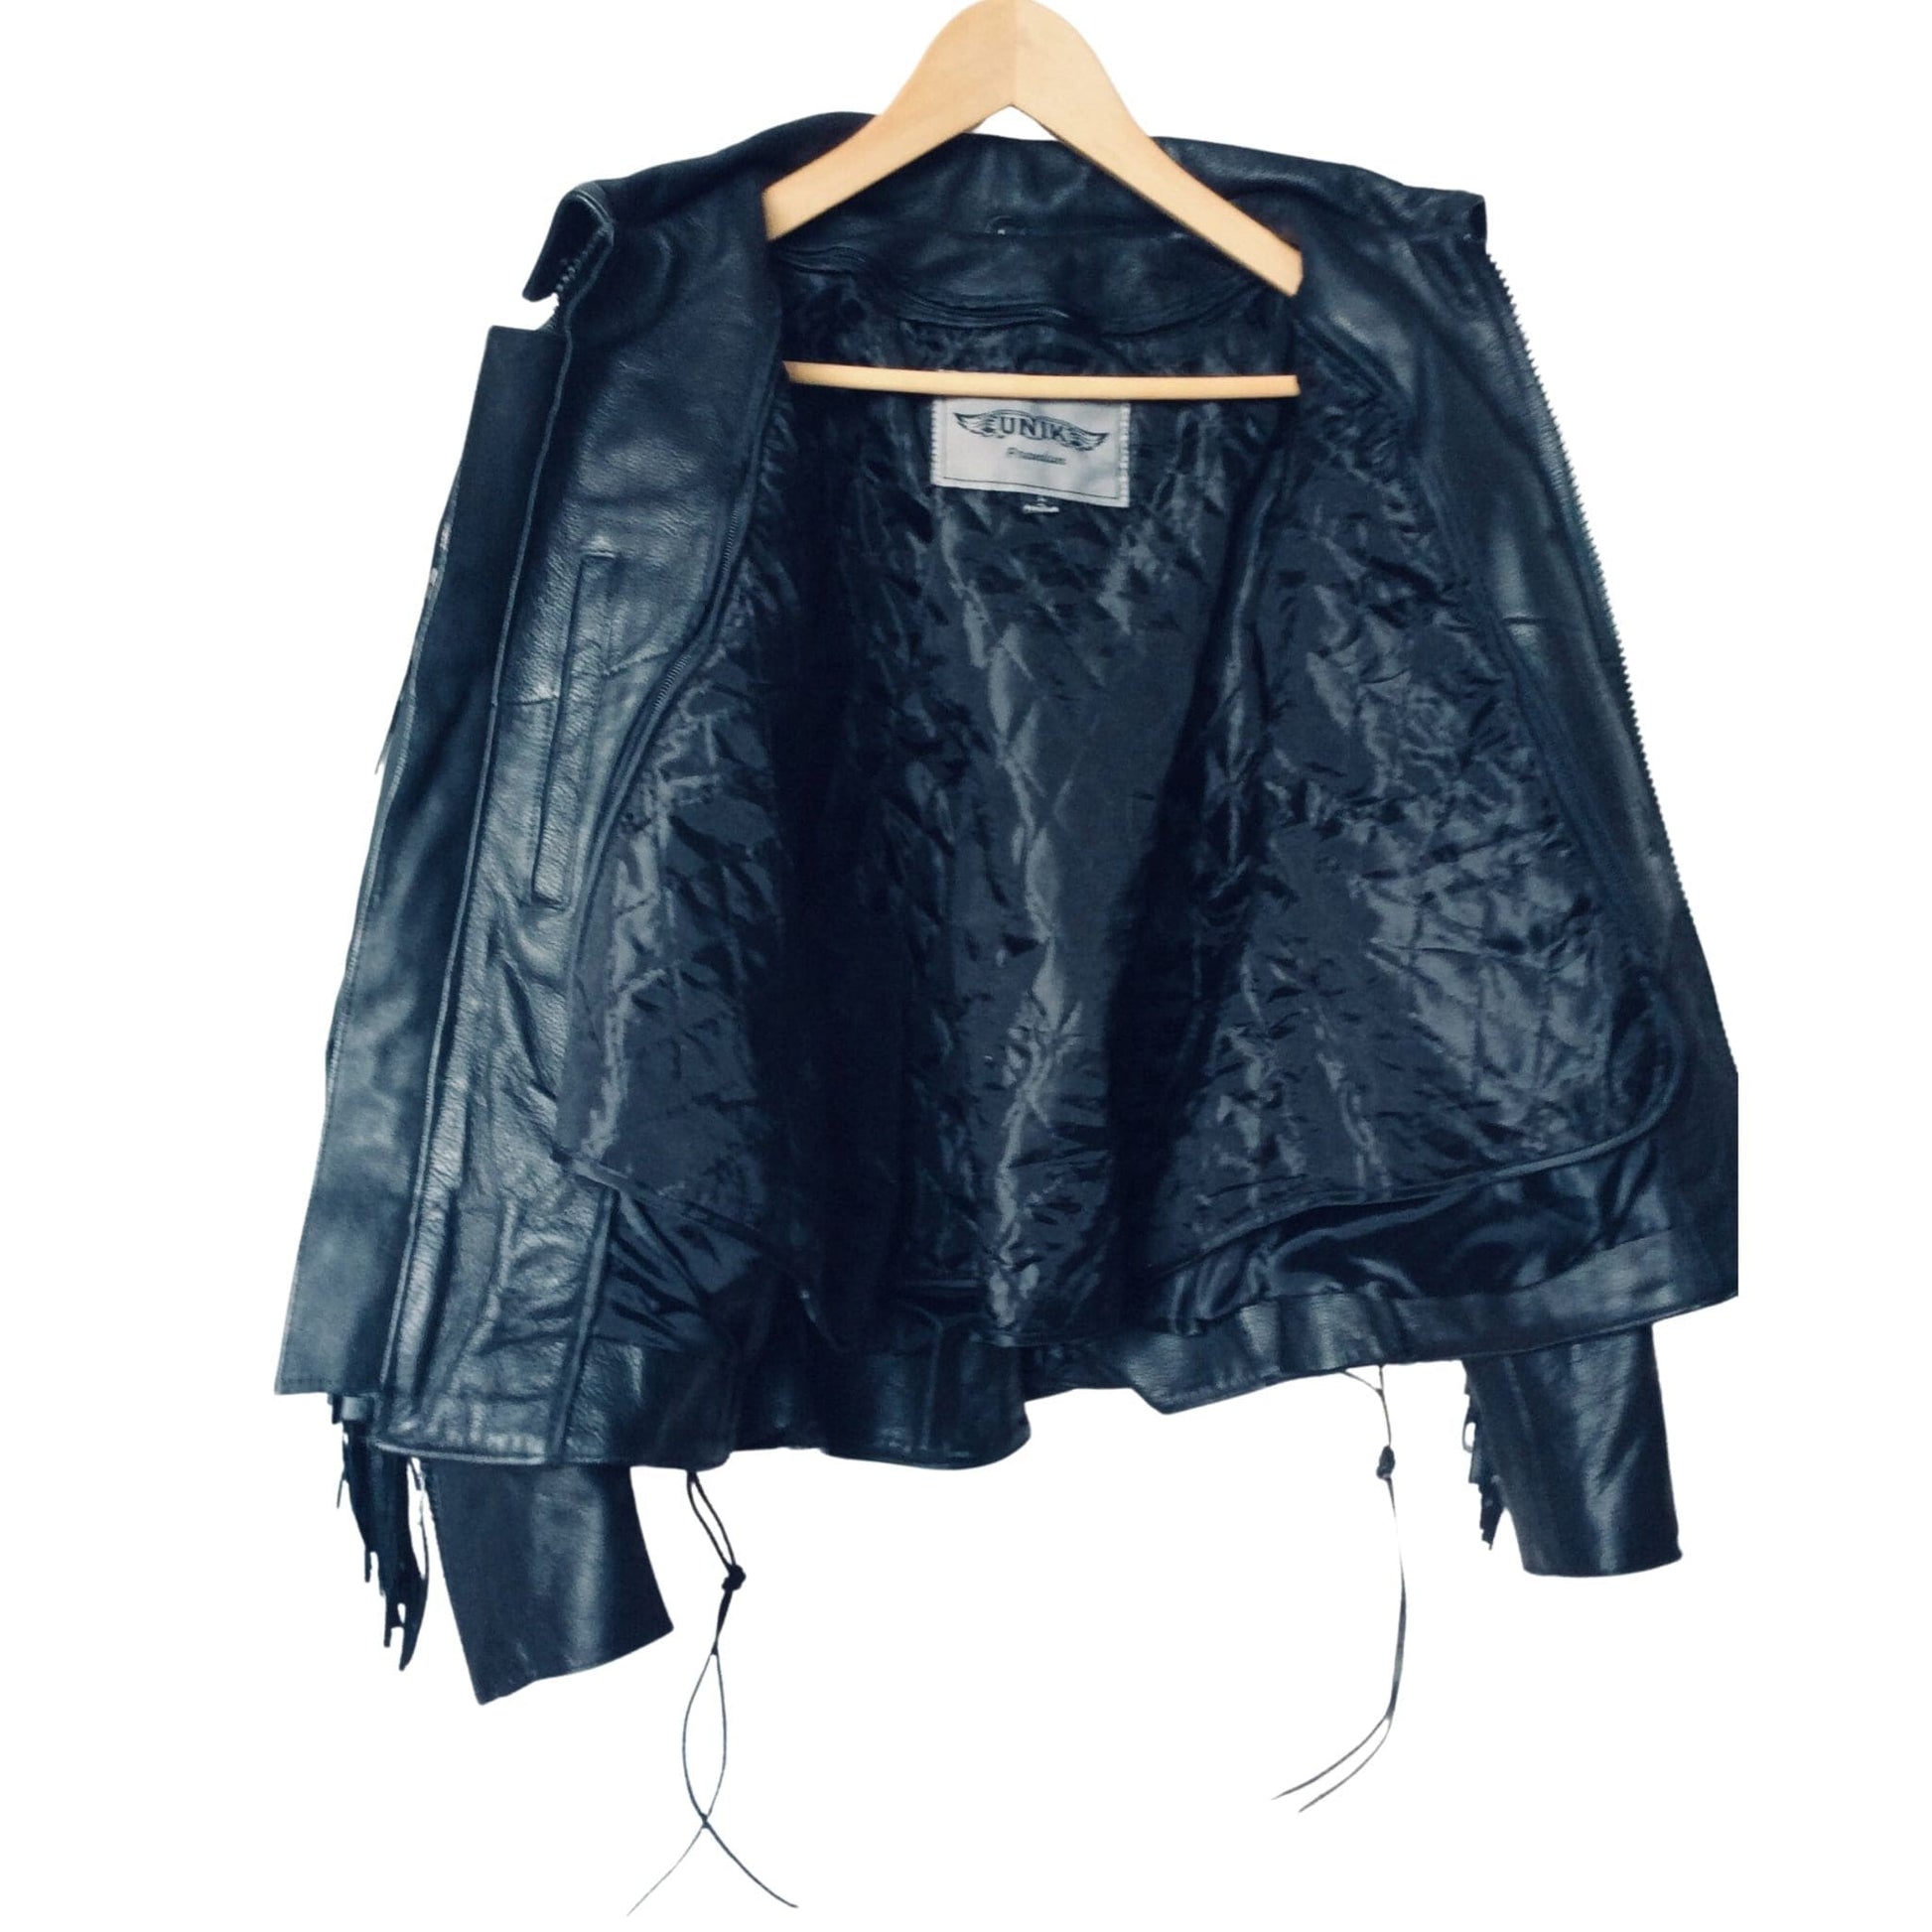 Fringed Leather Jacket Medium / Black / Vintage 1980s